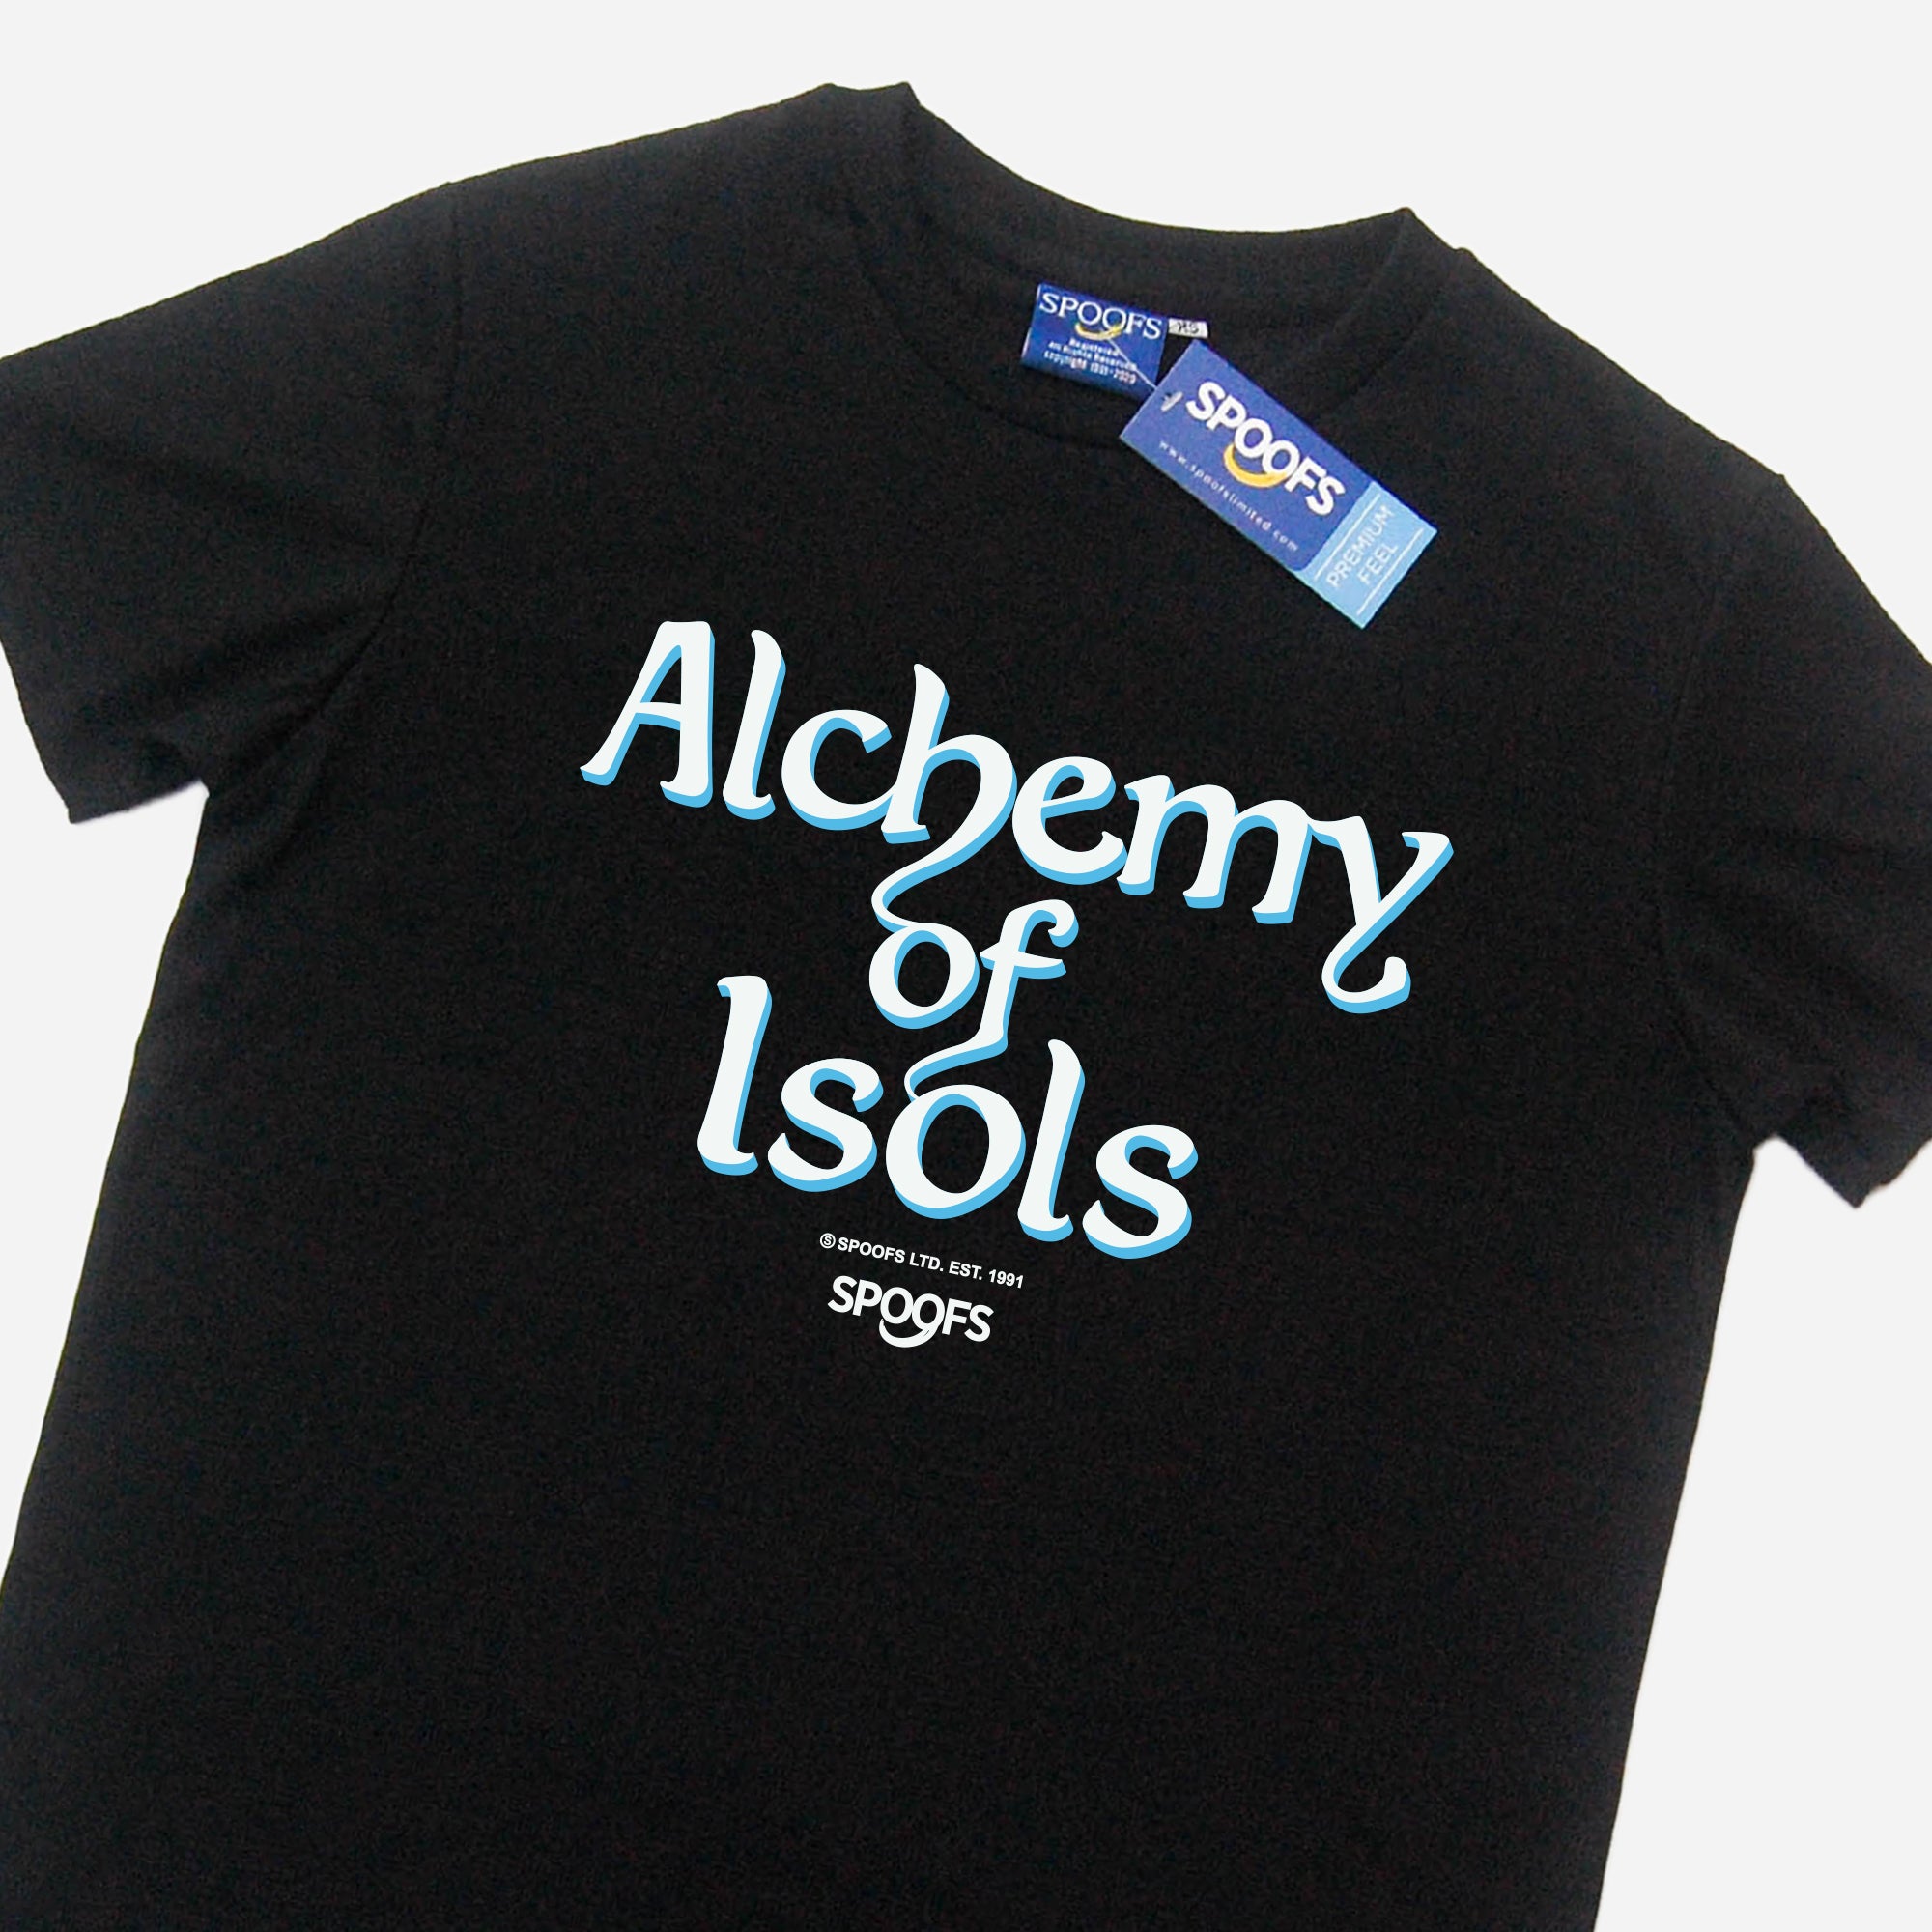 Alchemy of Isols (Black)